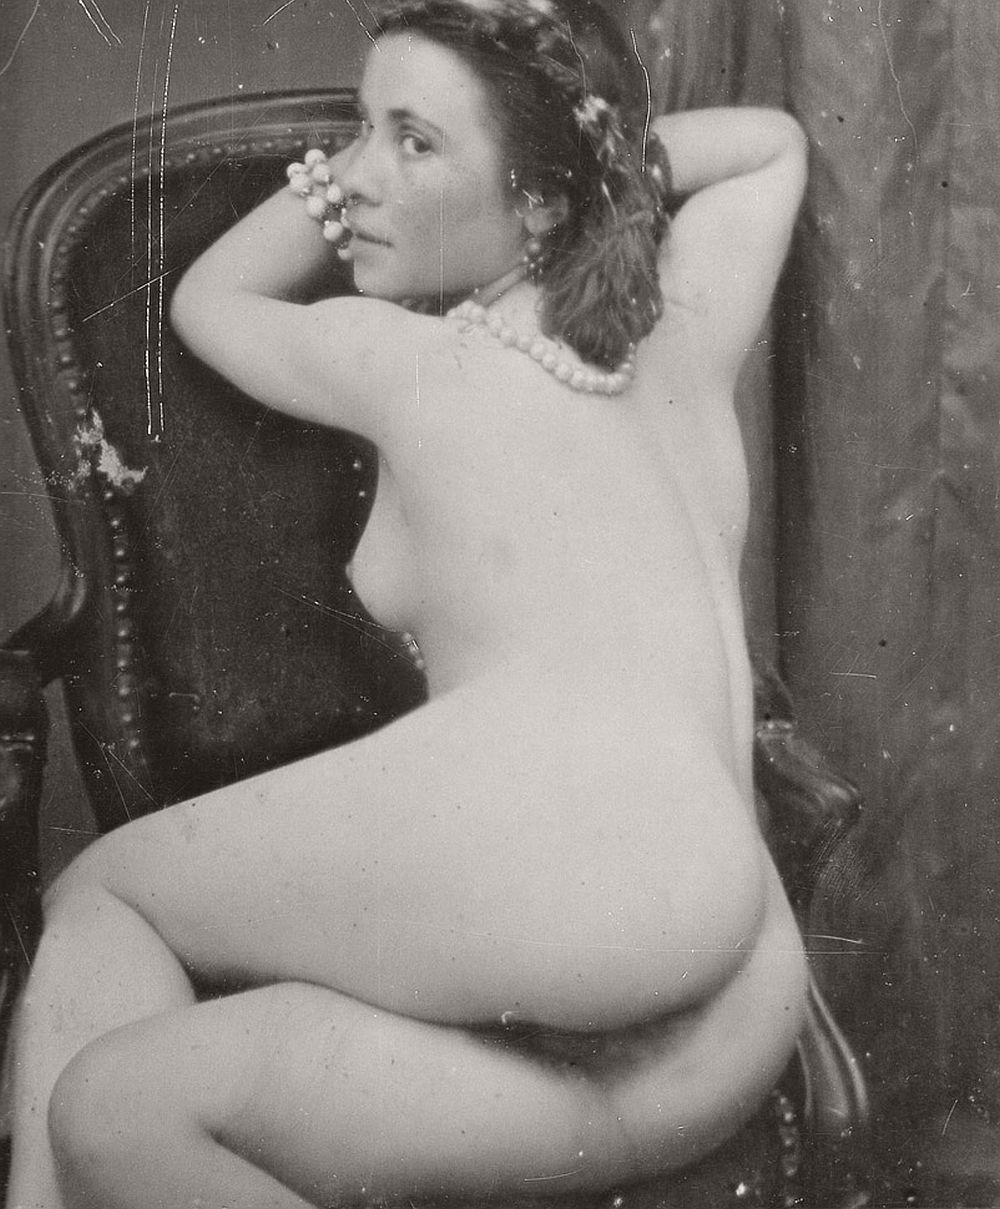 retro-vintage-nudes-erotica-1920s-01